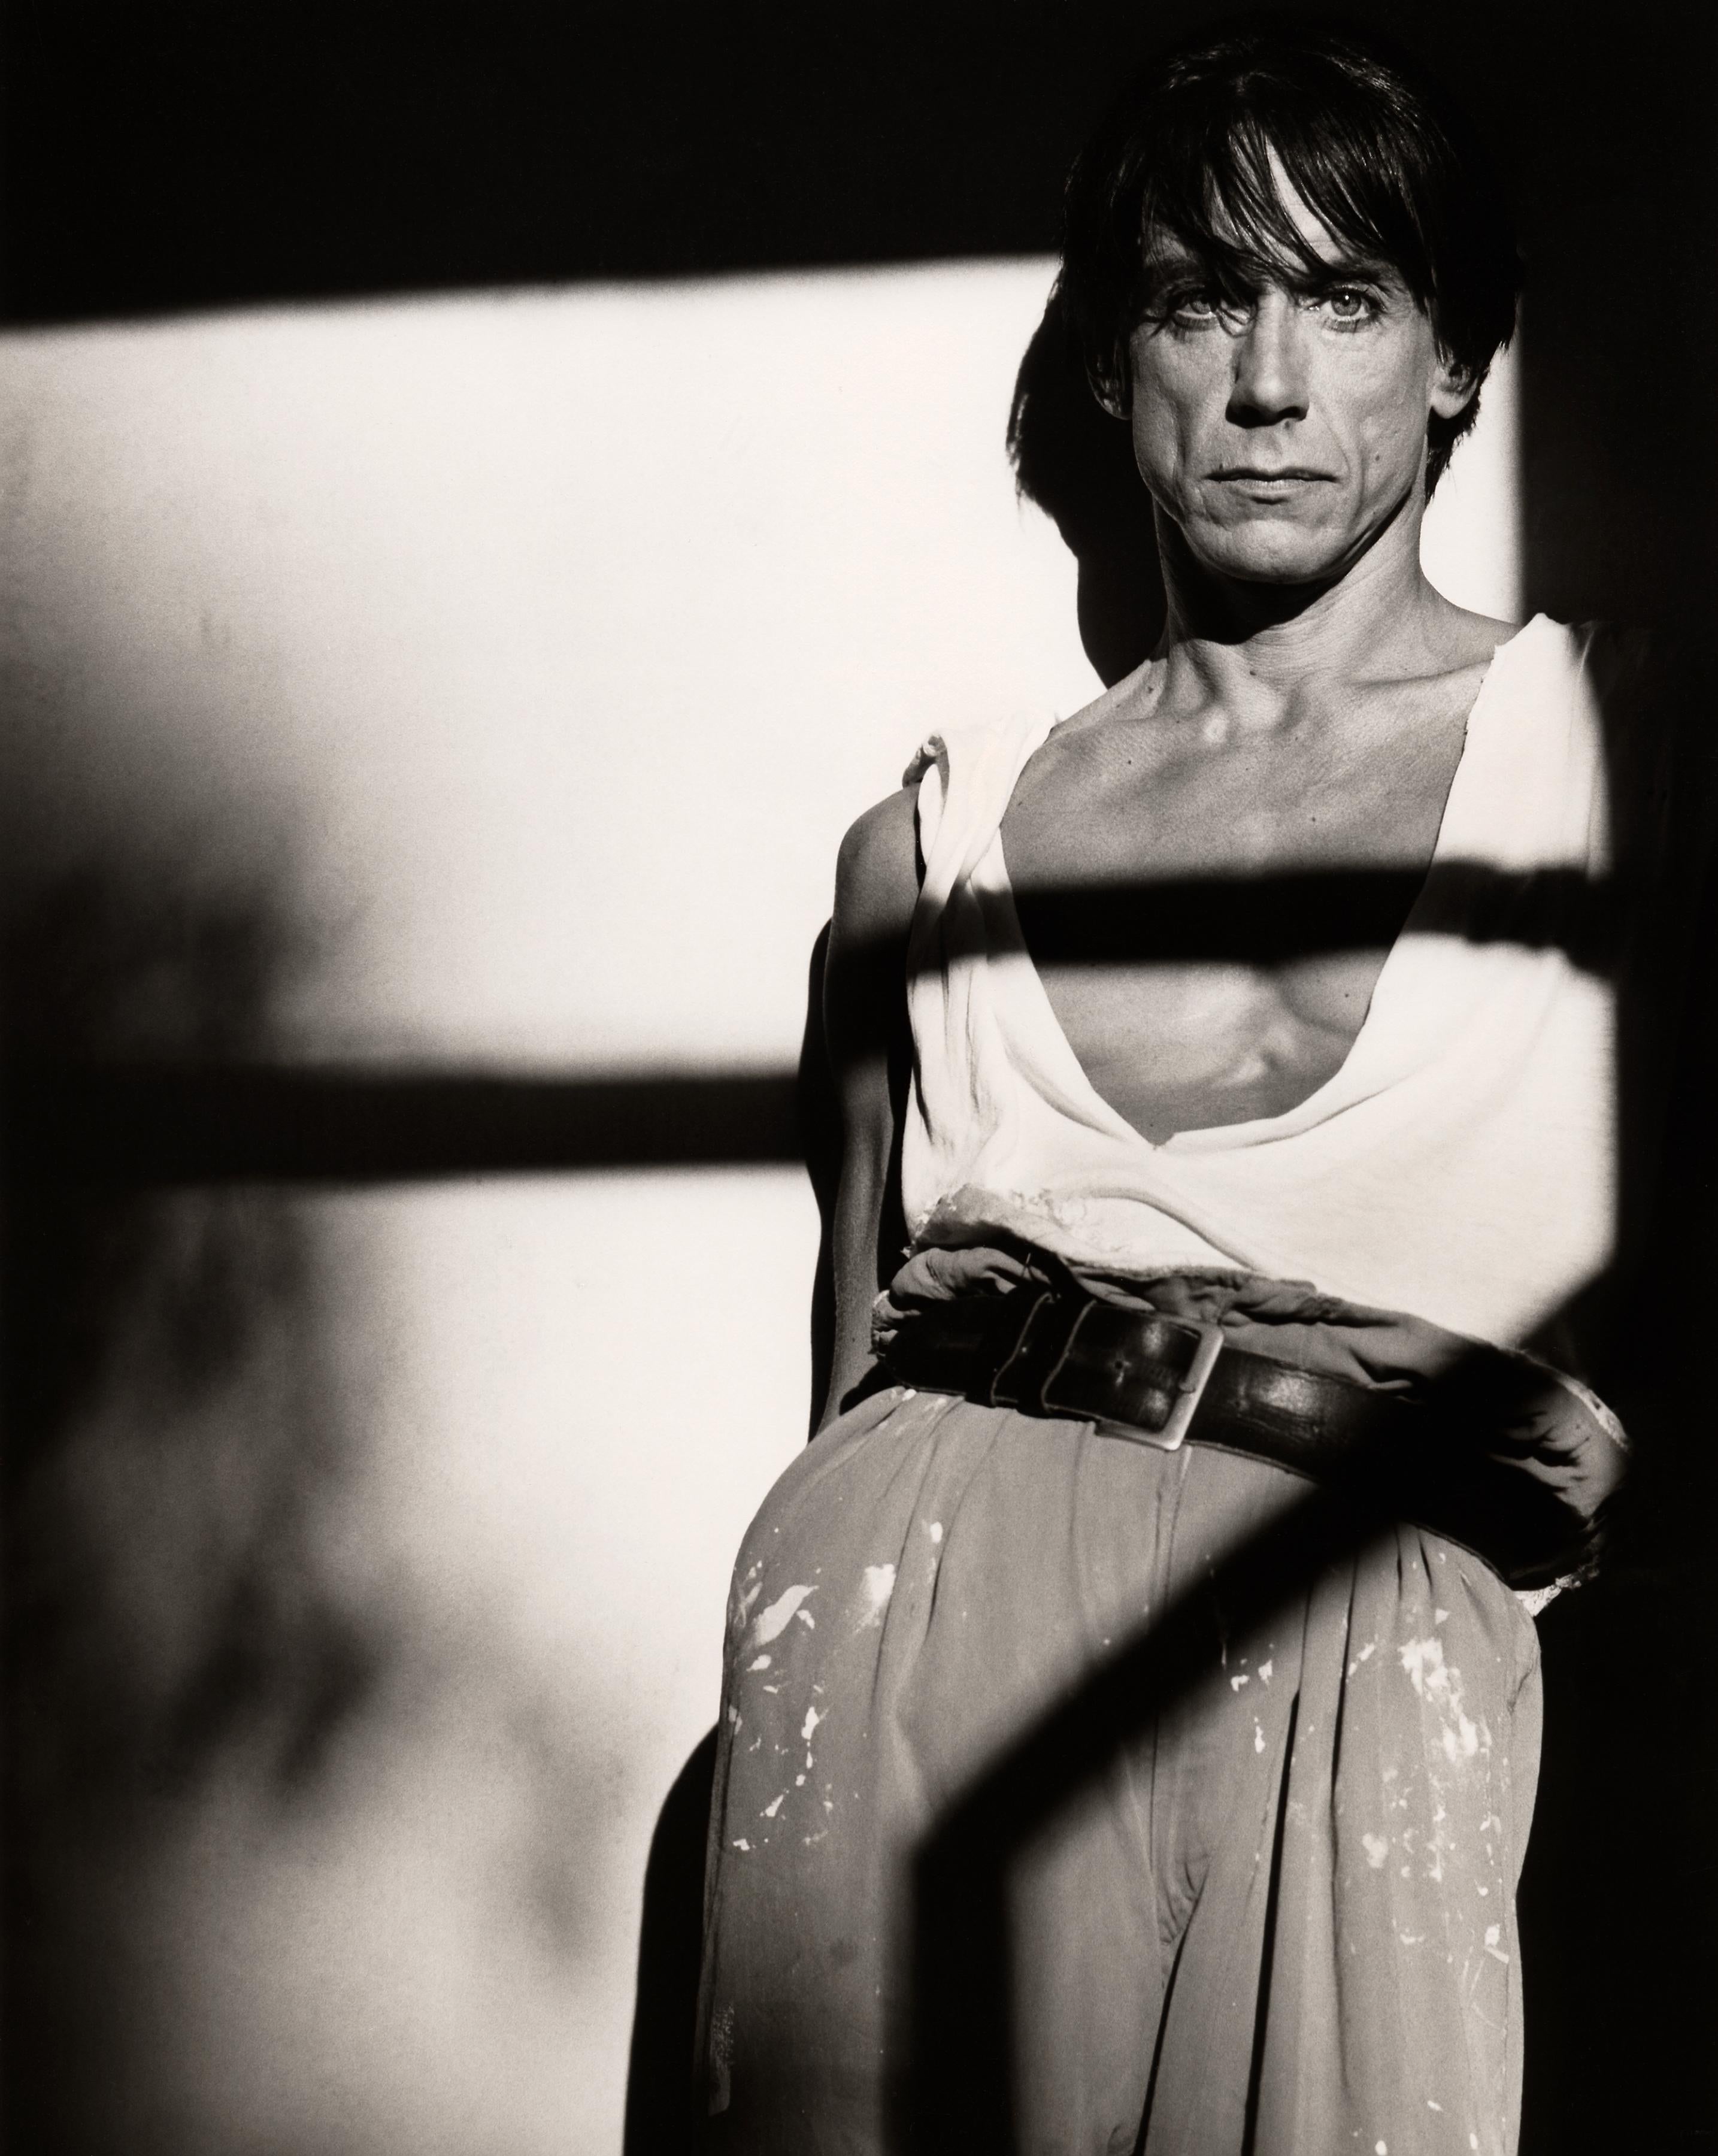 Greg Gorman Black and White Photograph – Iggy Pop in der Hose eines Malers, Zeitgenössisch, Prominent, Fotografie